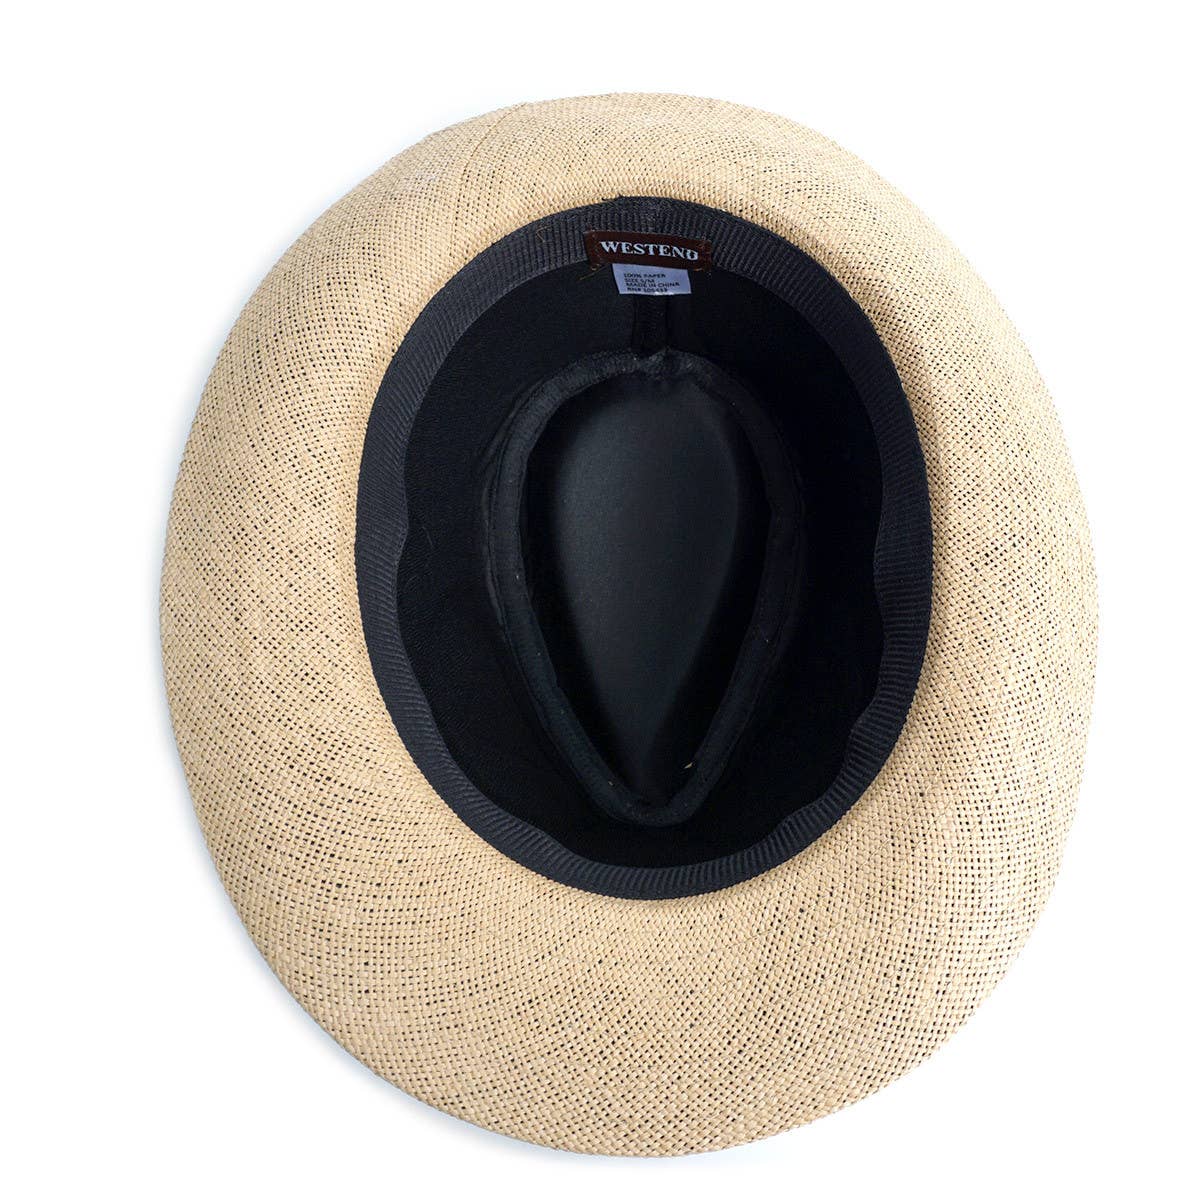 Spring/Summer Wide Brim Fedora Hat: S/M / Black